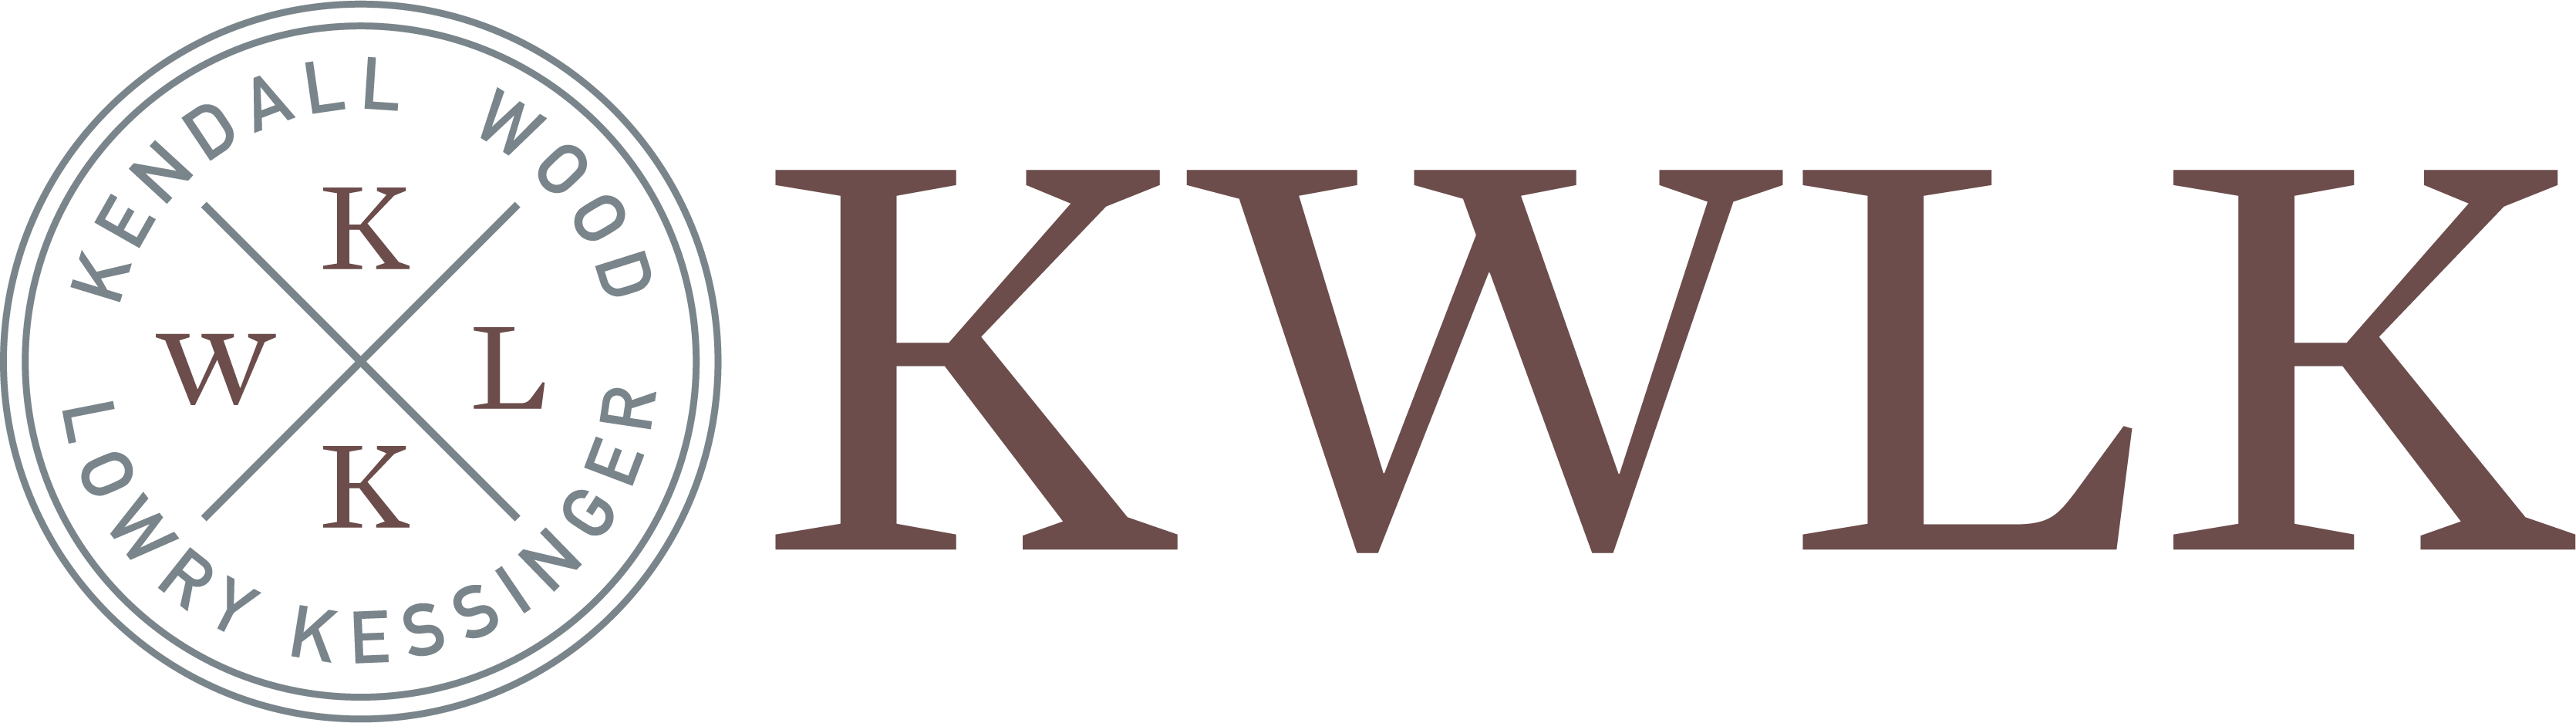 KWLK Law